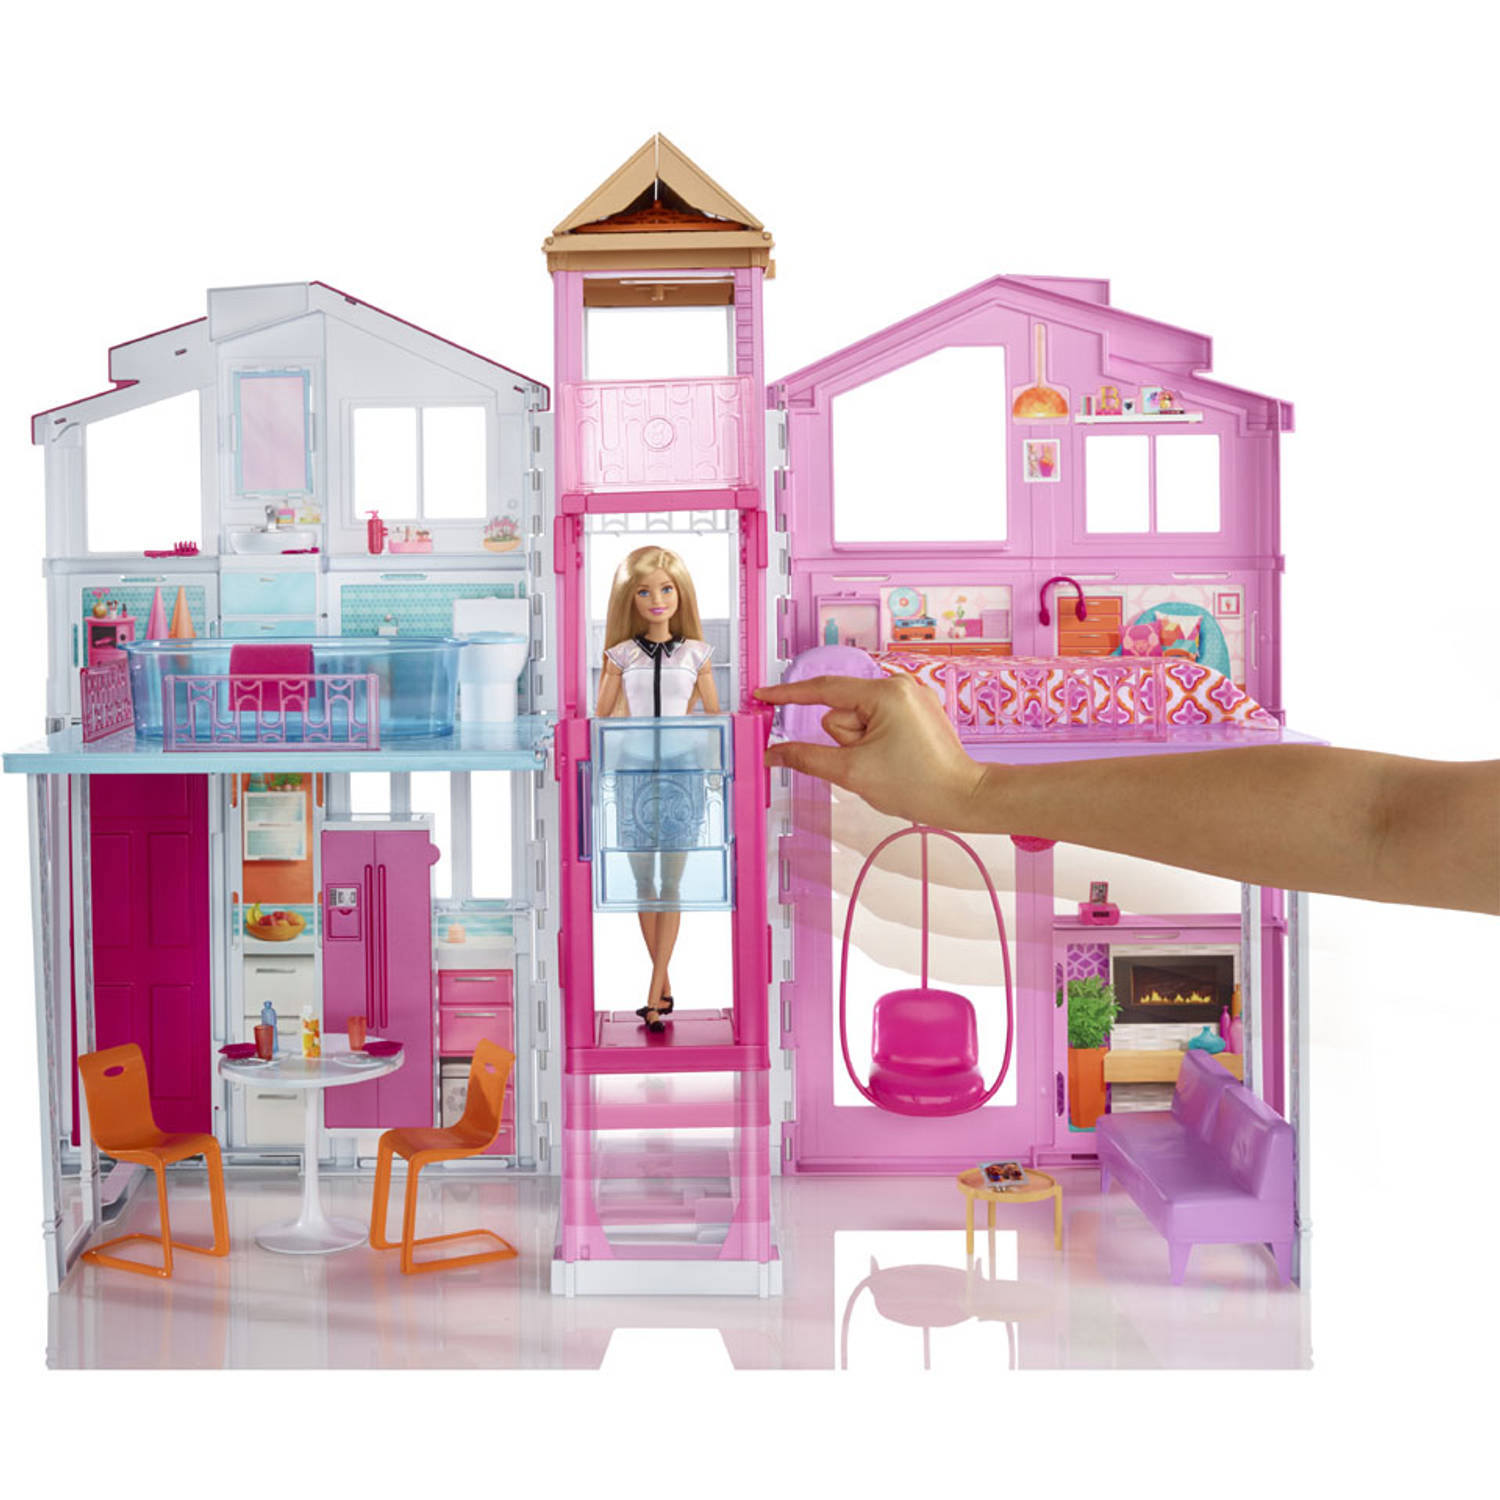 verwijderen Oppositie bron Barbie Malibu droomhuis | Blokker